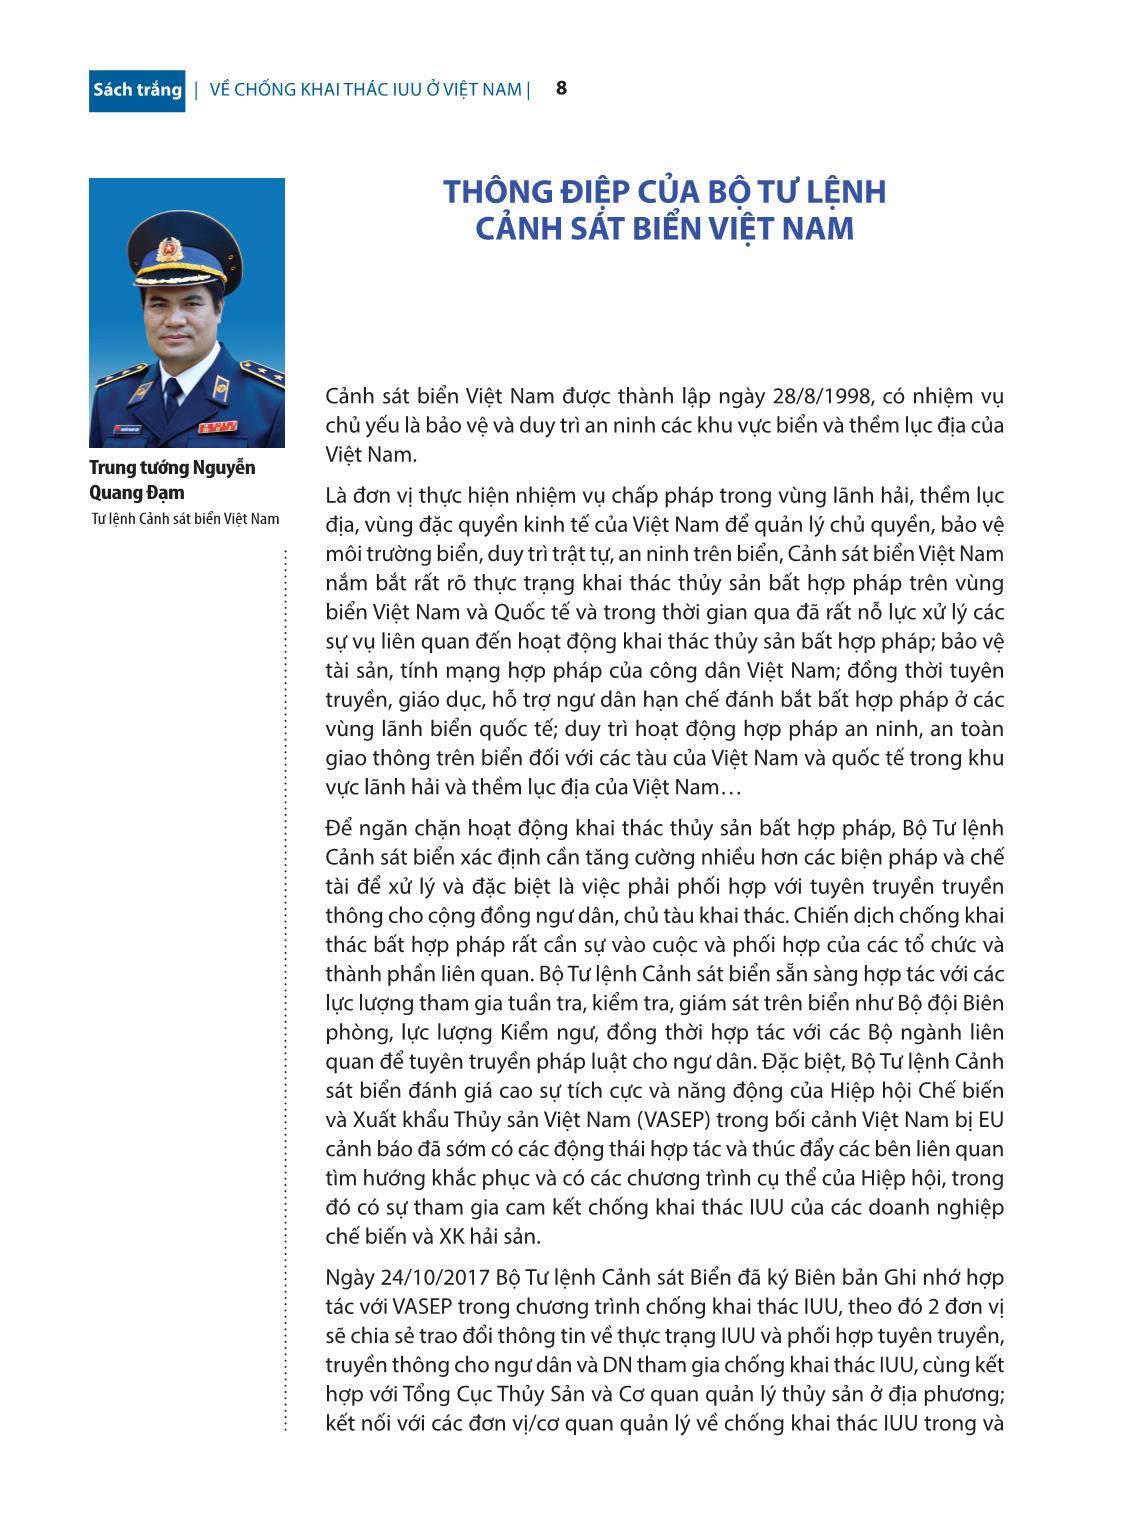 Sách trắng về chống khai thác IUU ở Việt Nam trang 9